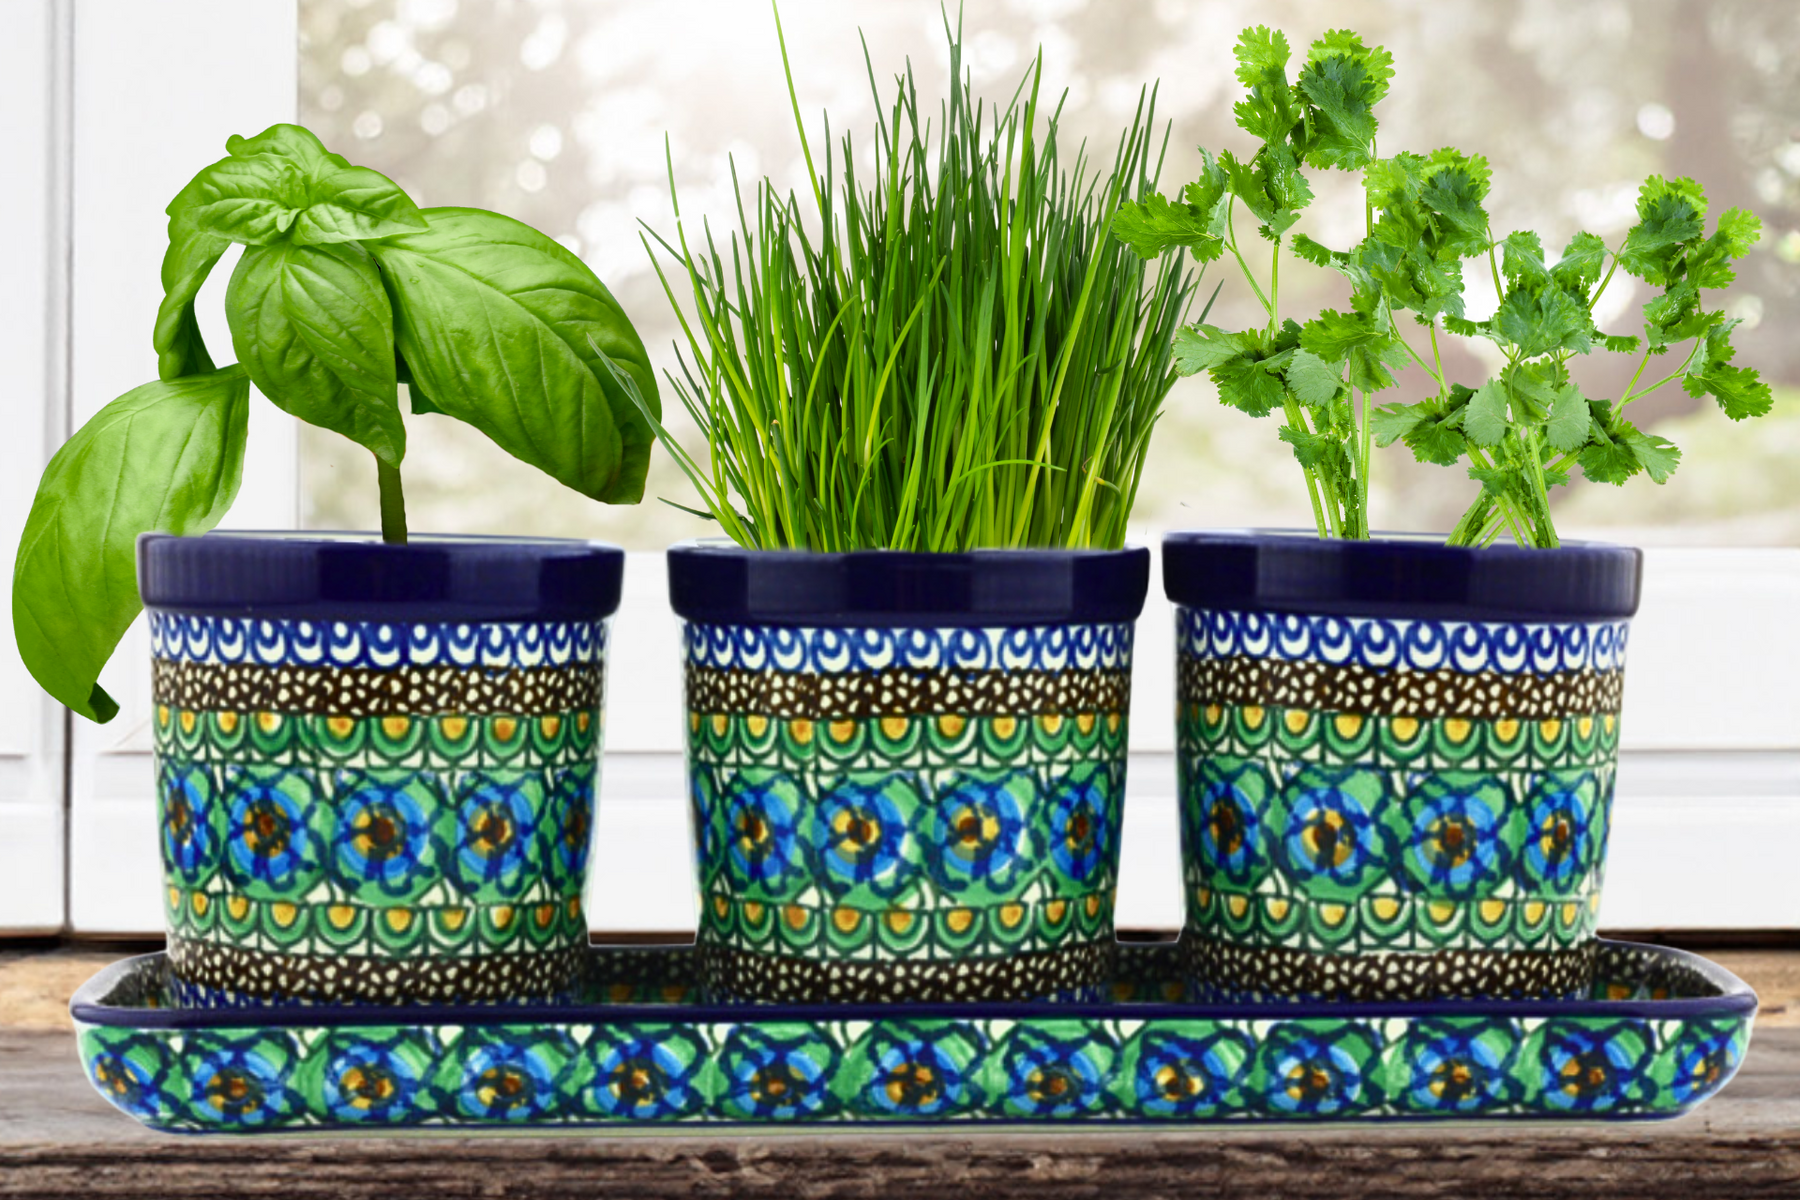 Set of 3 Planters in "Mardi Gras" pattern by Ceramika Artystyczna